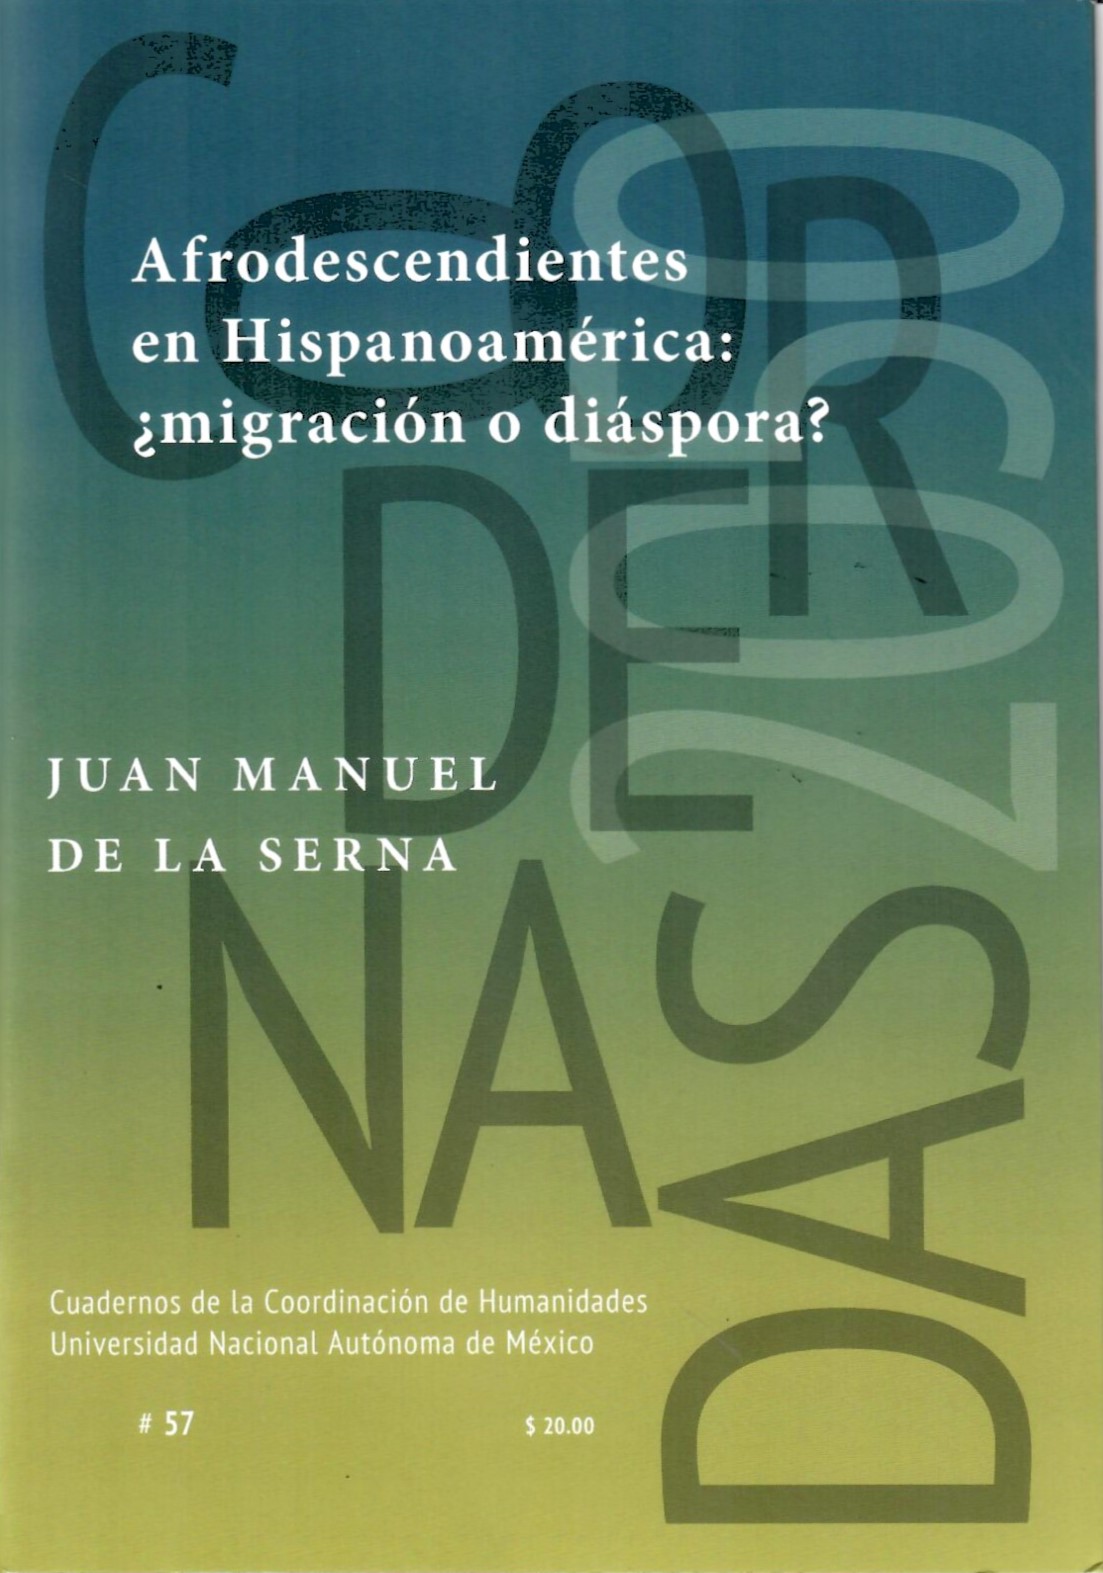 Afrodescendientes en Hispanoamérica ¿migración o diáspora?